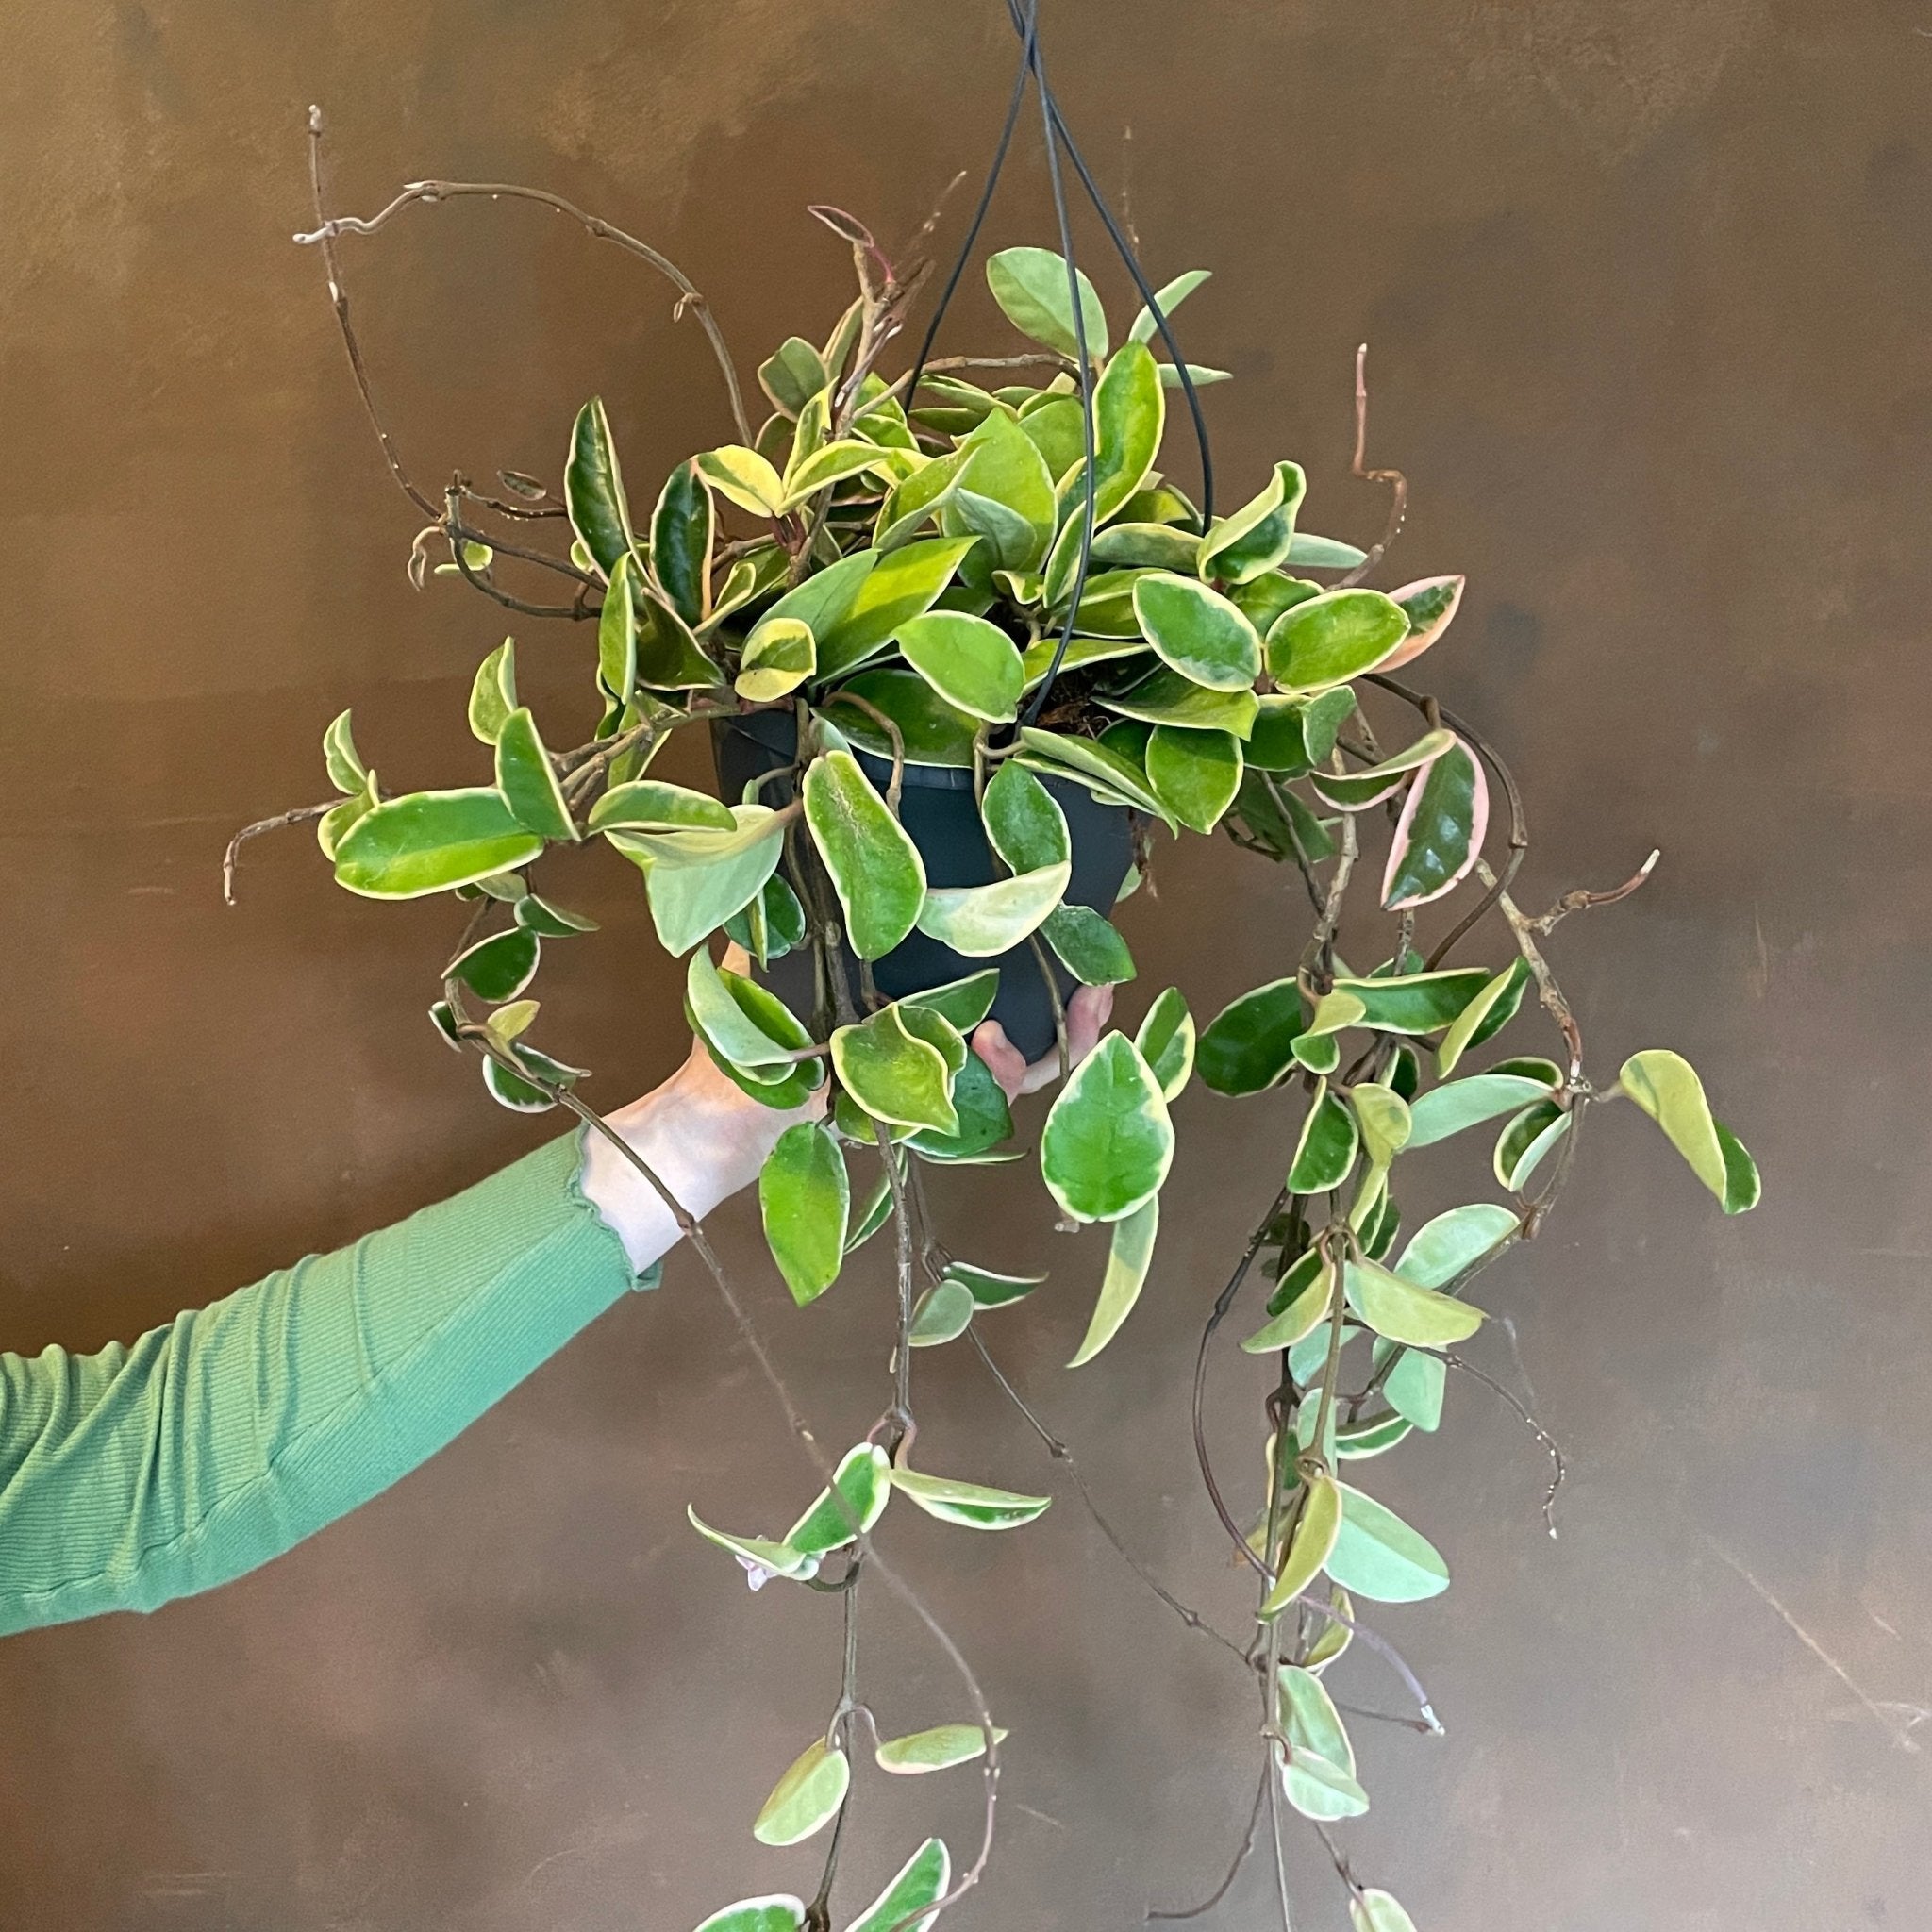 Hoya ‘Krimson Queen' (19cm hangpot) - grow urban. UK